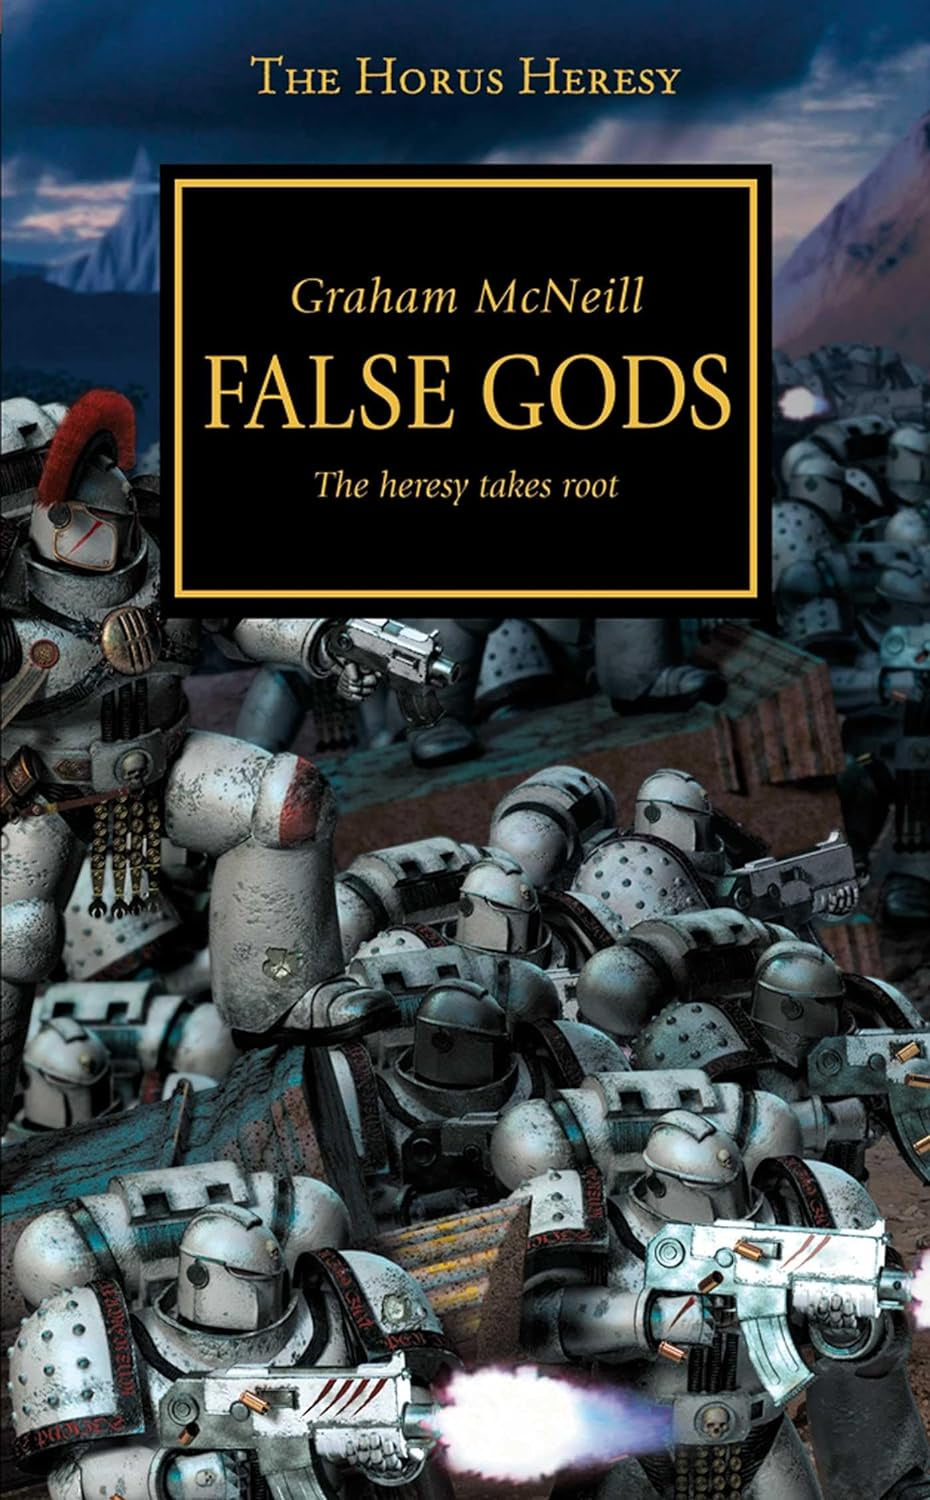 THE HORUS HERESY: FALSE GODS